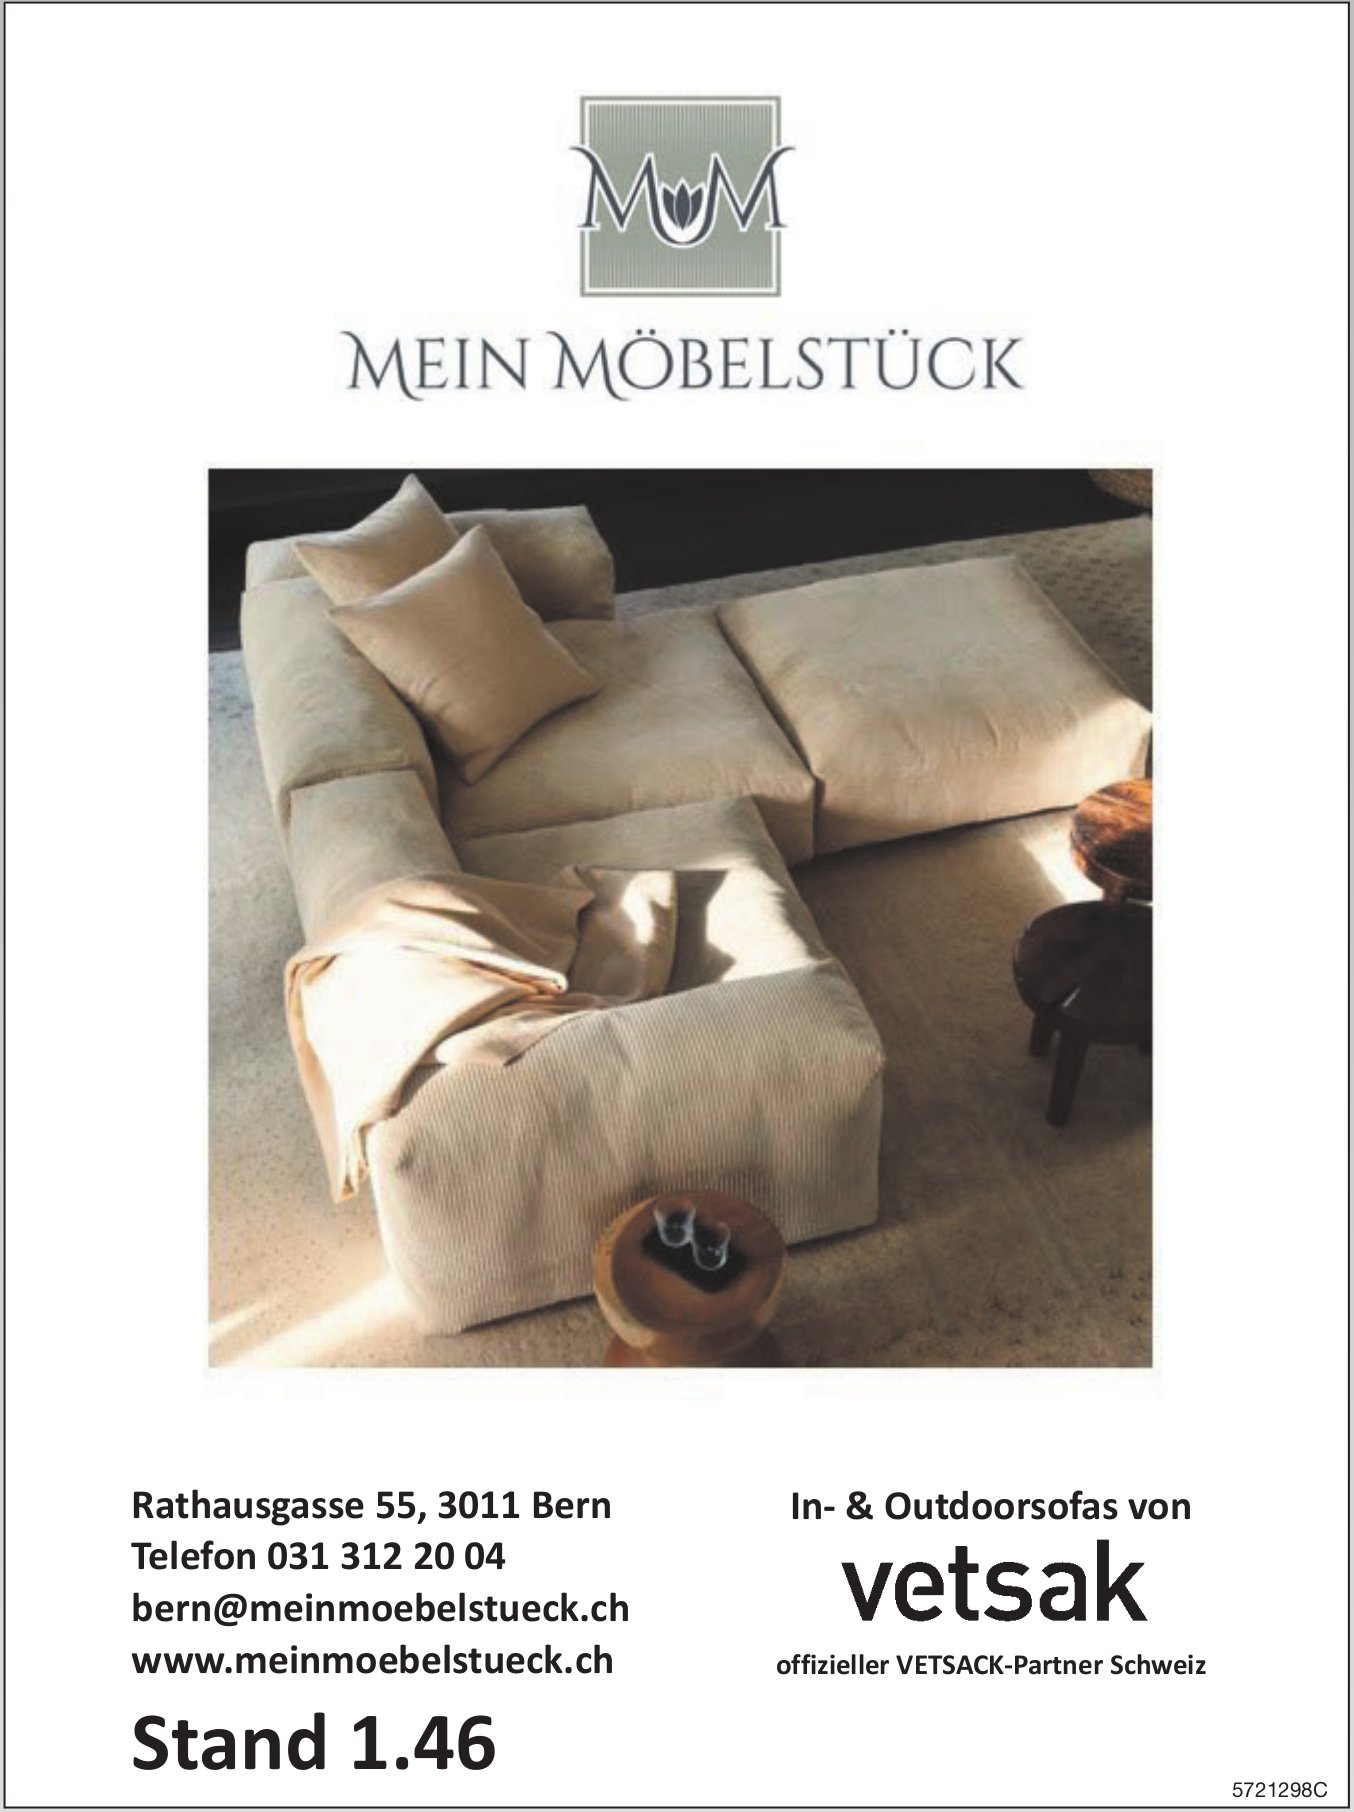 Mein Möbelstück, Bern - Offizieller VETSACK-Partner Schweiz